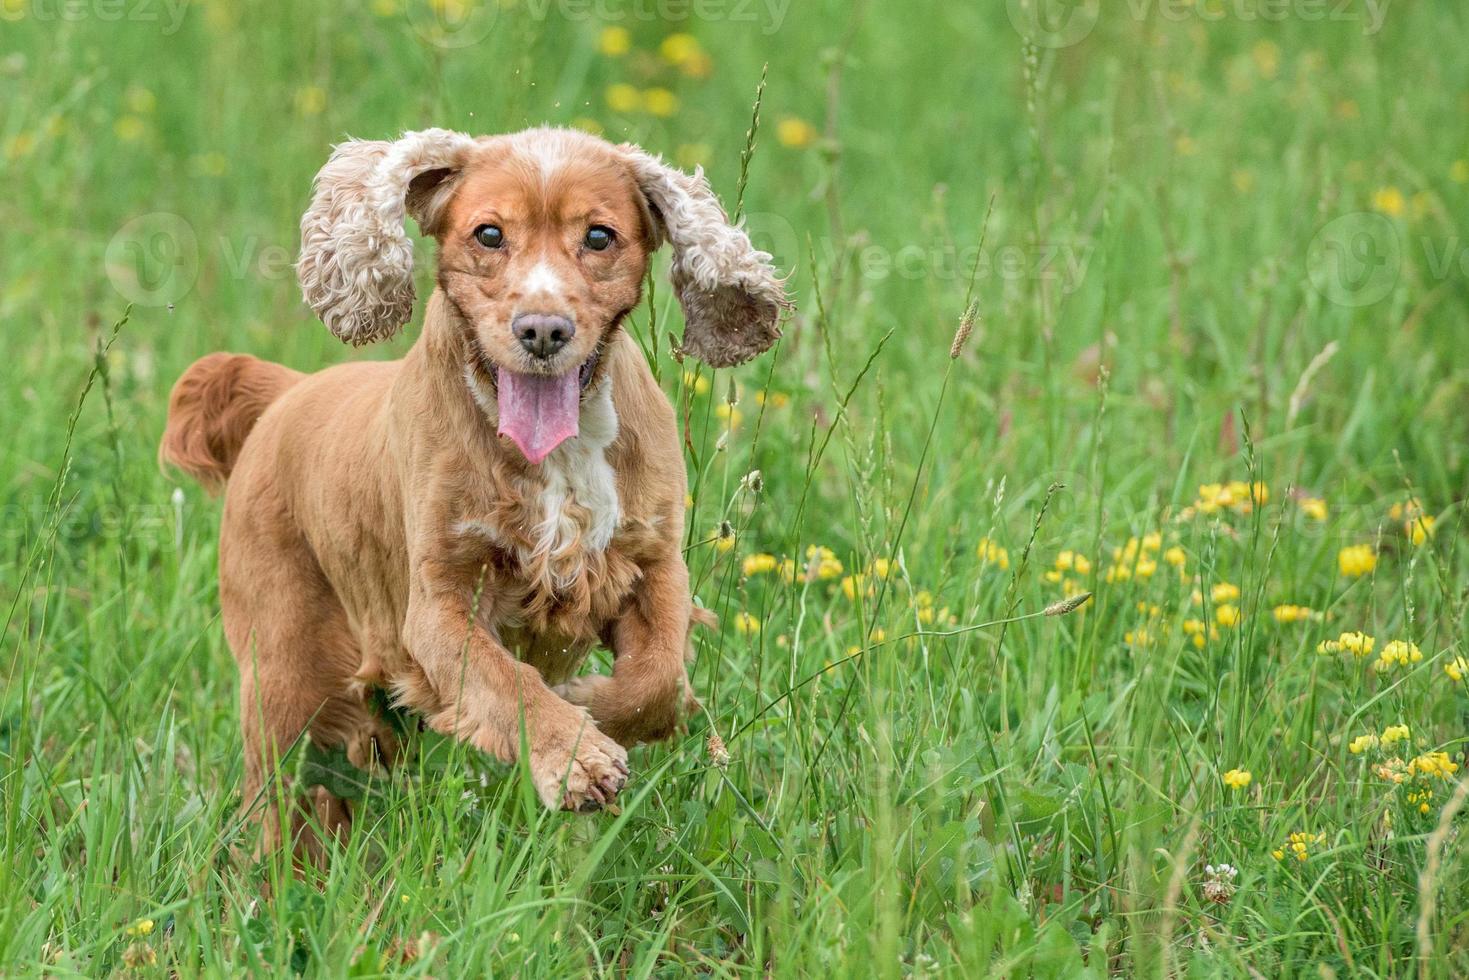 cachorro joven perro cocker spaniel inglés mientras corre sobre la hierba foto